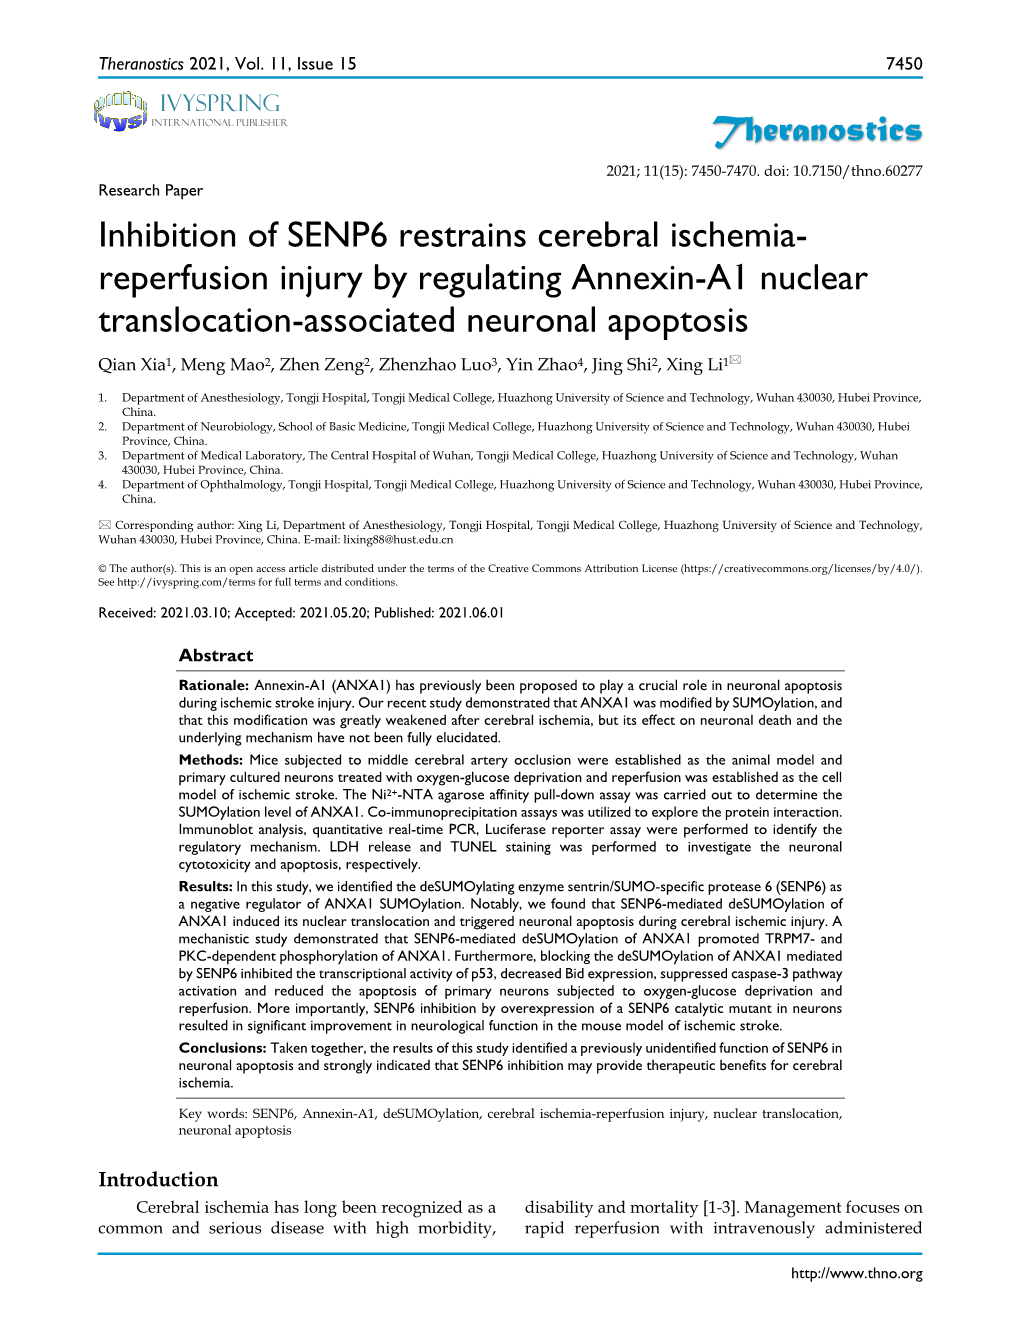 Theranostics Inhibition of SENP6 Restrains Cerebral Ischemia